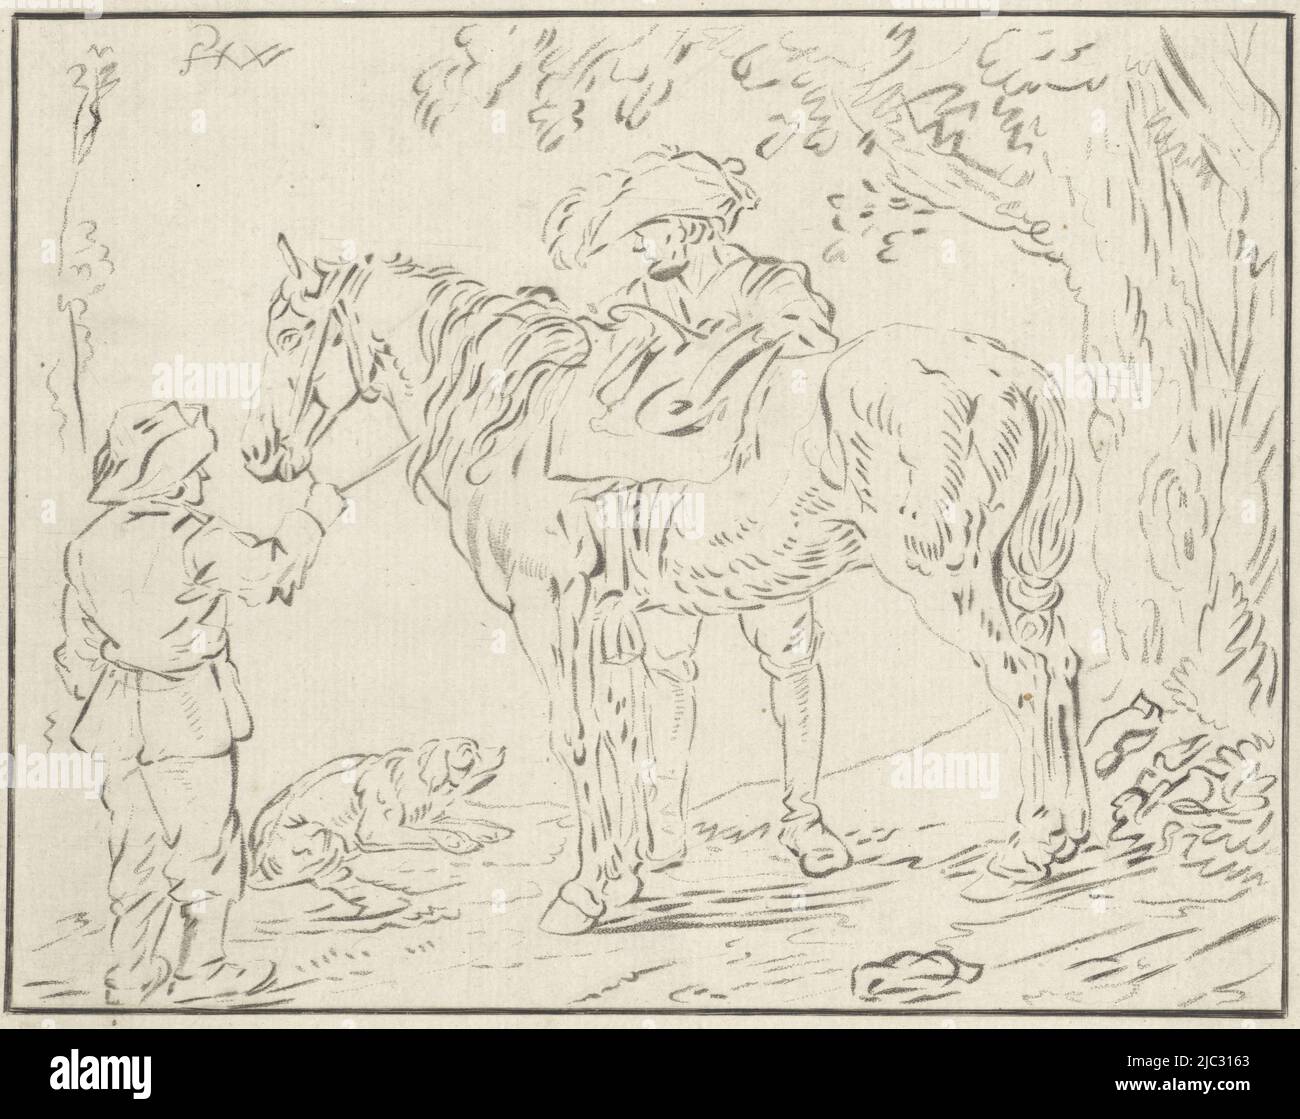 Un homme tient un cheval par la rétrein, tandis qu'un autre homme le porte. Près d'eux un chien, deux hommes près d'un cheval, imprimeur: Bernhard Schreuder, dessinateur intermédiaire: Philips Wouwerman, (mentionné sur l'objet), pays-Bas, 1767 - 1780, papier, h 158 mm × l 197 mm Banque D'Images